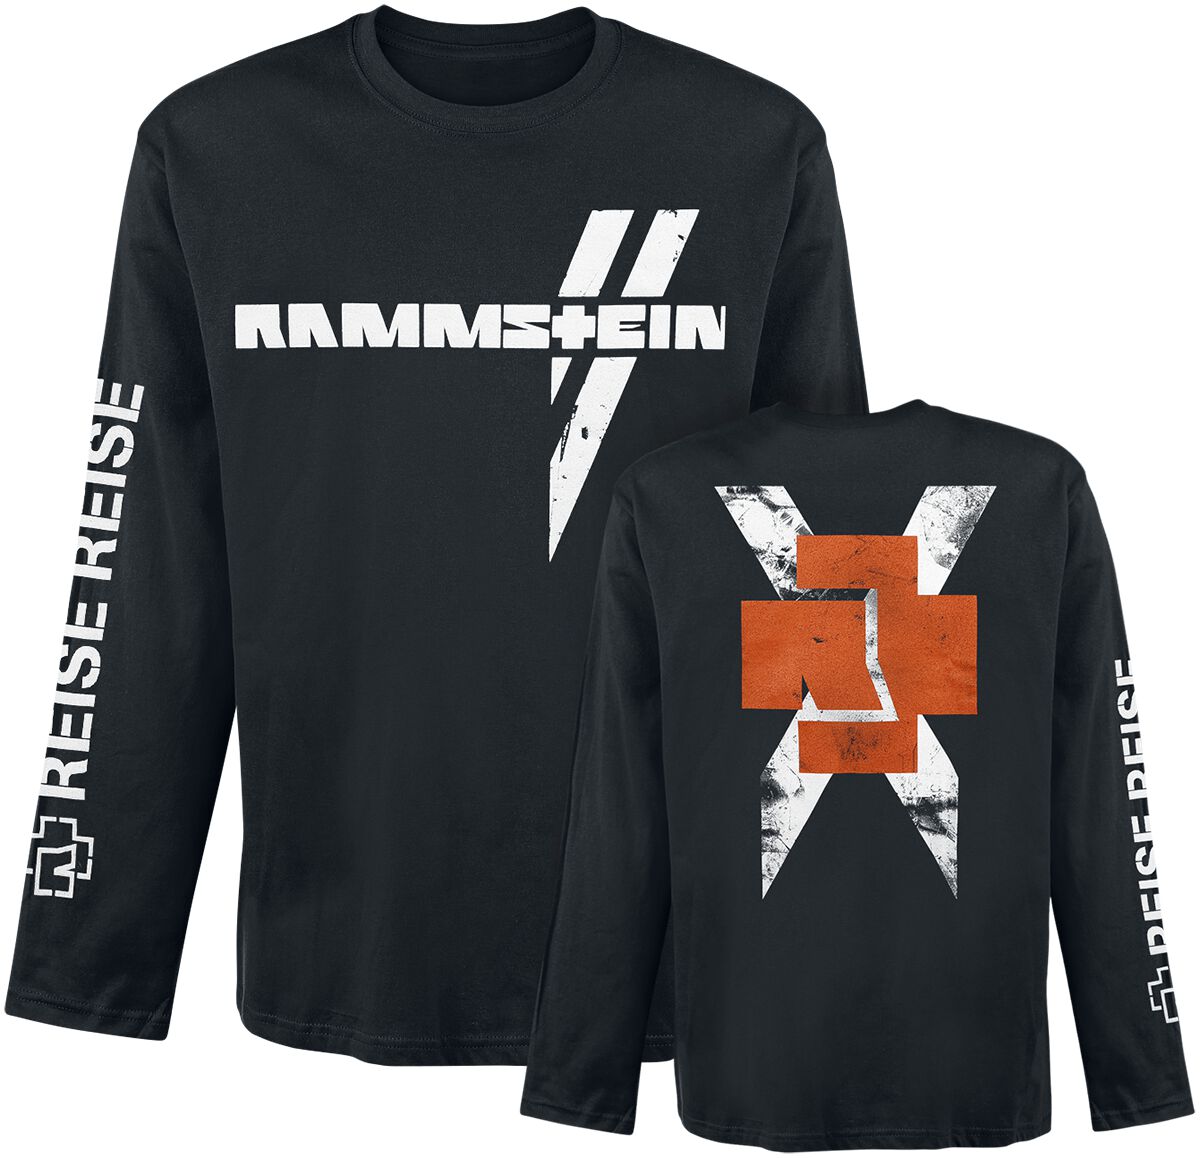 Rammstein Langarmshirt - Weißes Kreuz - M bis XL - für Männer - Größe M - schwarz  - Lizenziertes Merchandise!